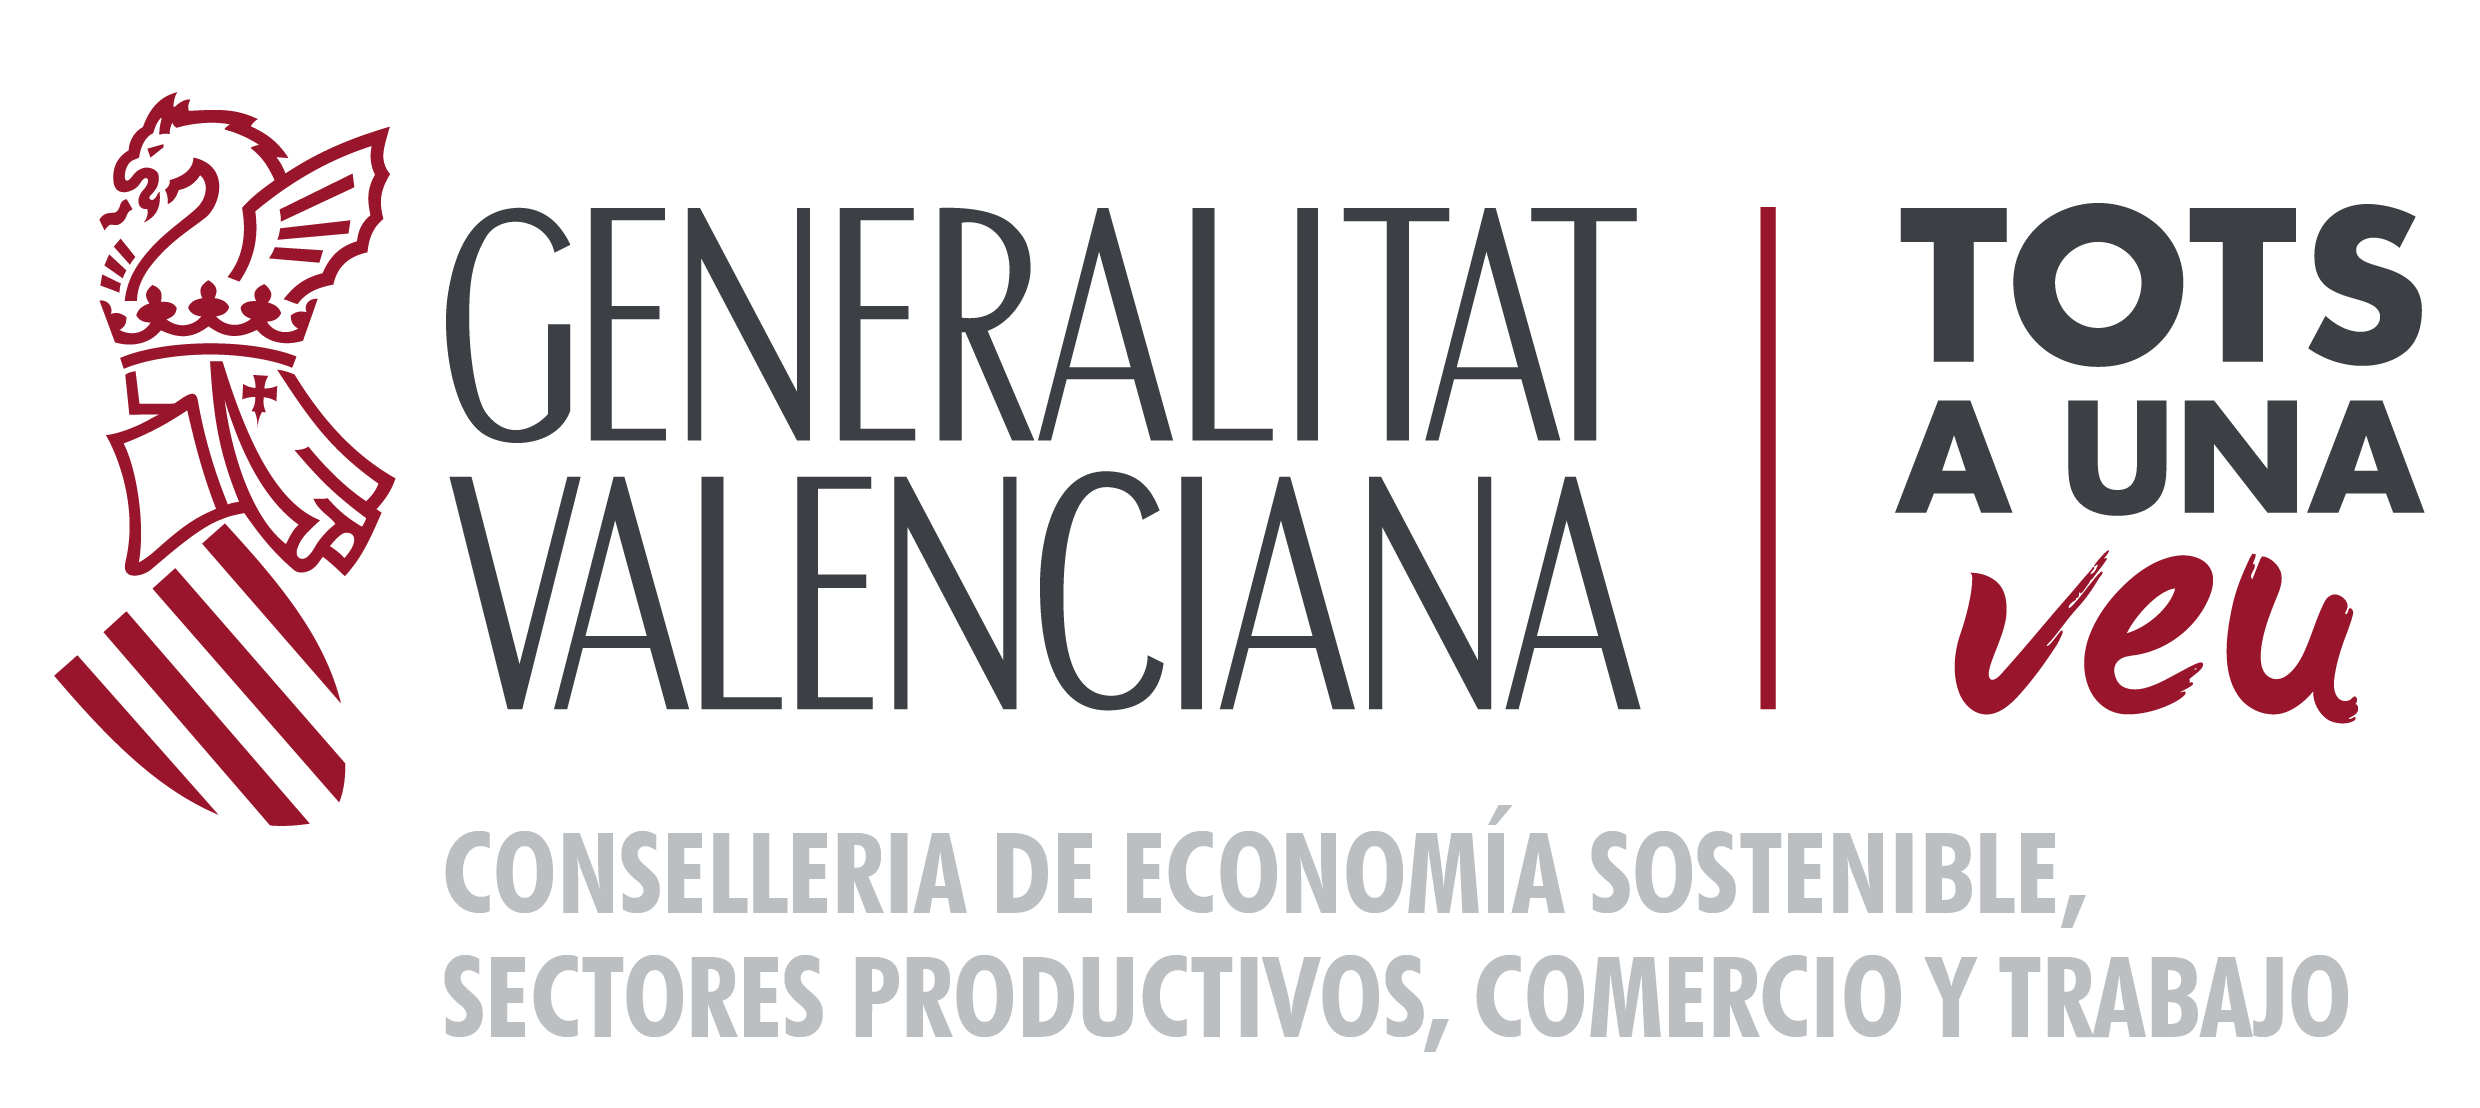 Conselleria de Economía Sostenible, Sectores Productivos, Comercio y Trabajo